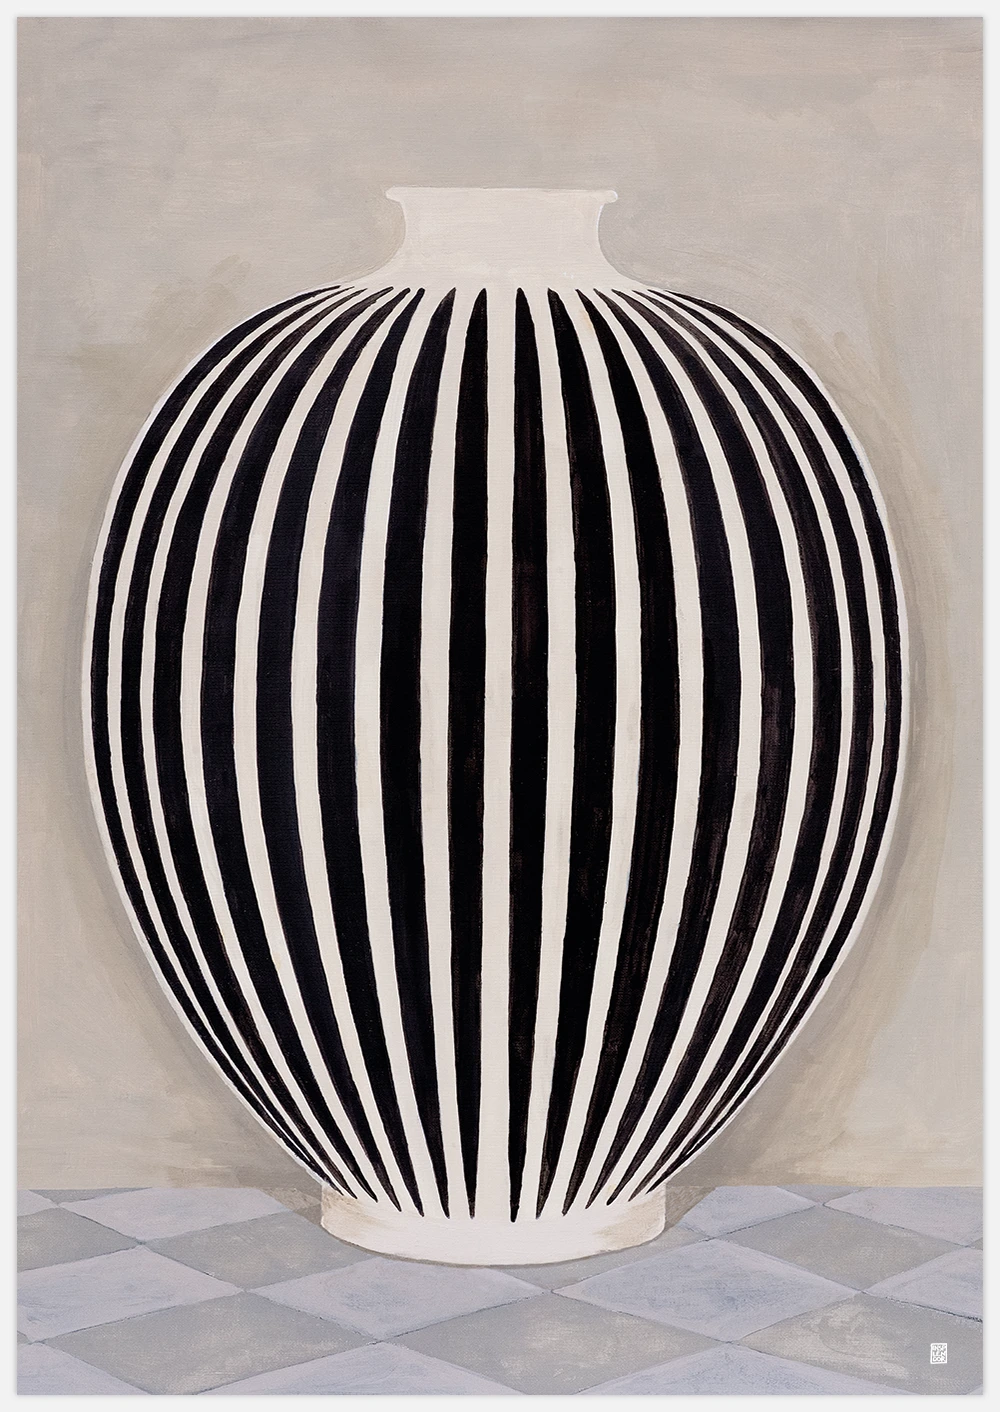 Striped Pot Art Print